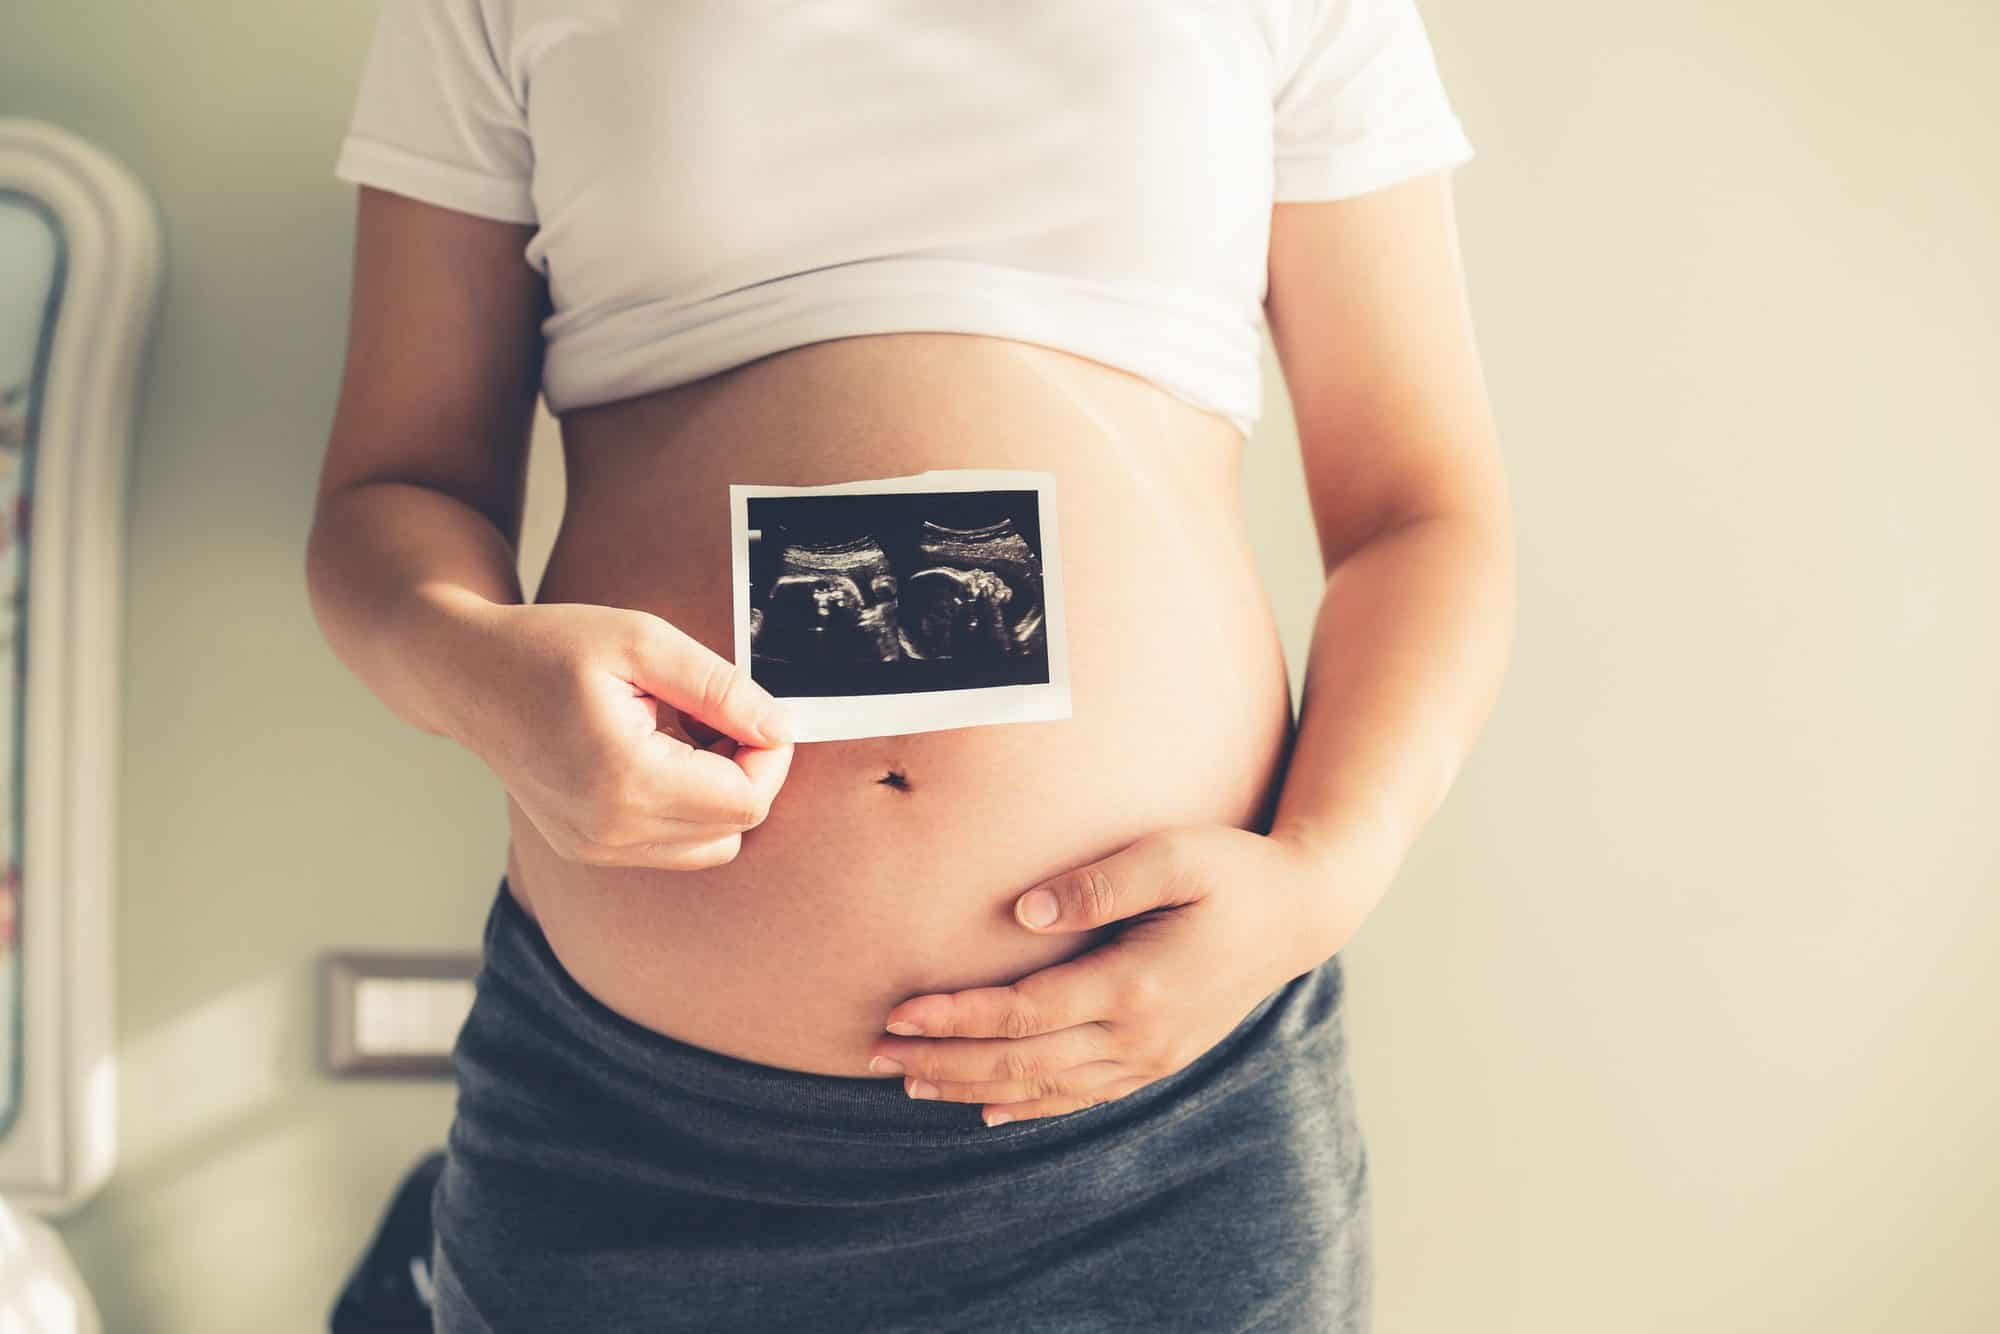 Embarazo y endometriosis: ¿Es posible?